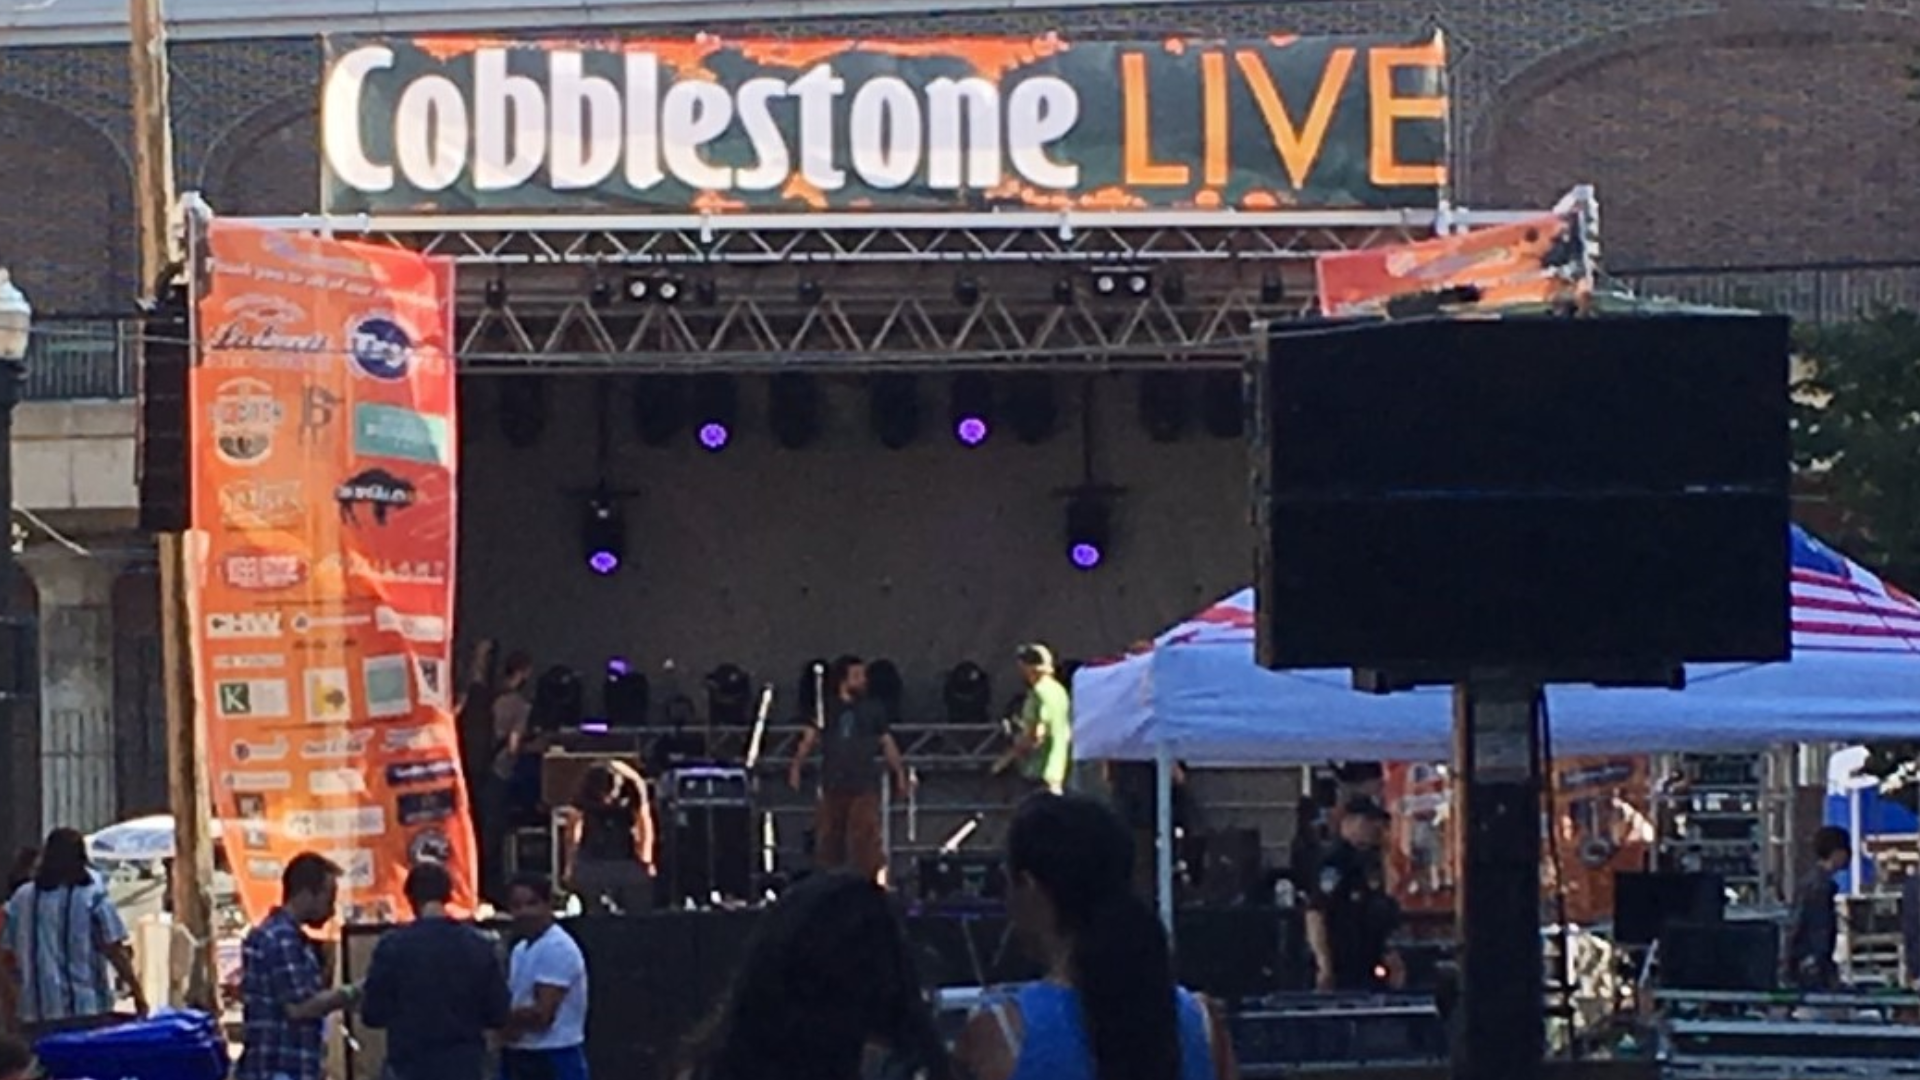 Cobblestone Live Music & Art Festival comes to Buffalo